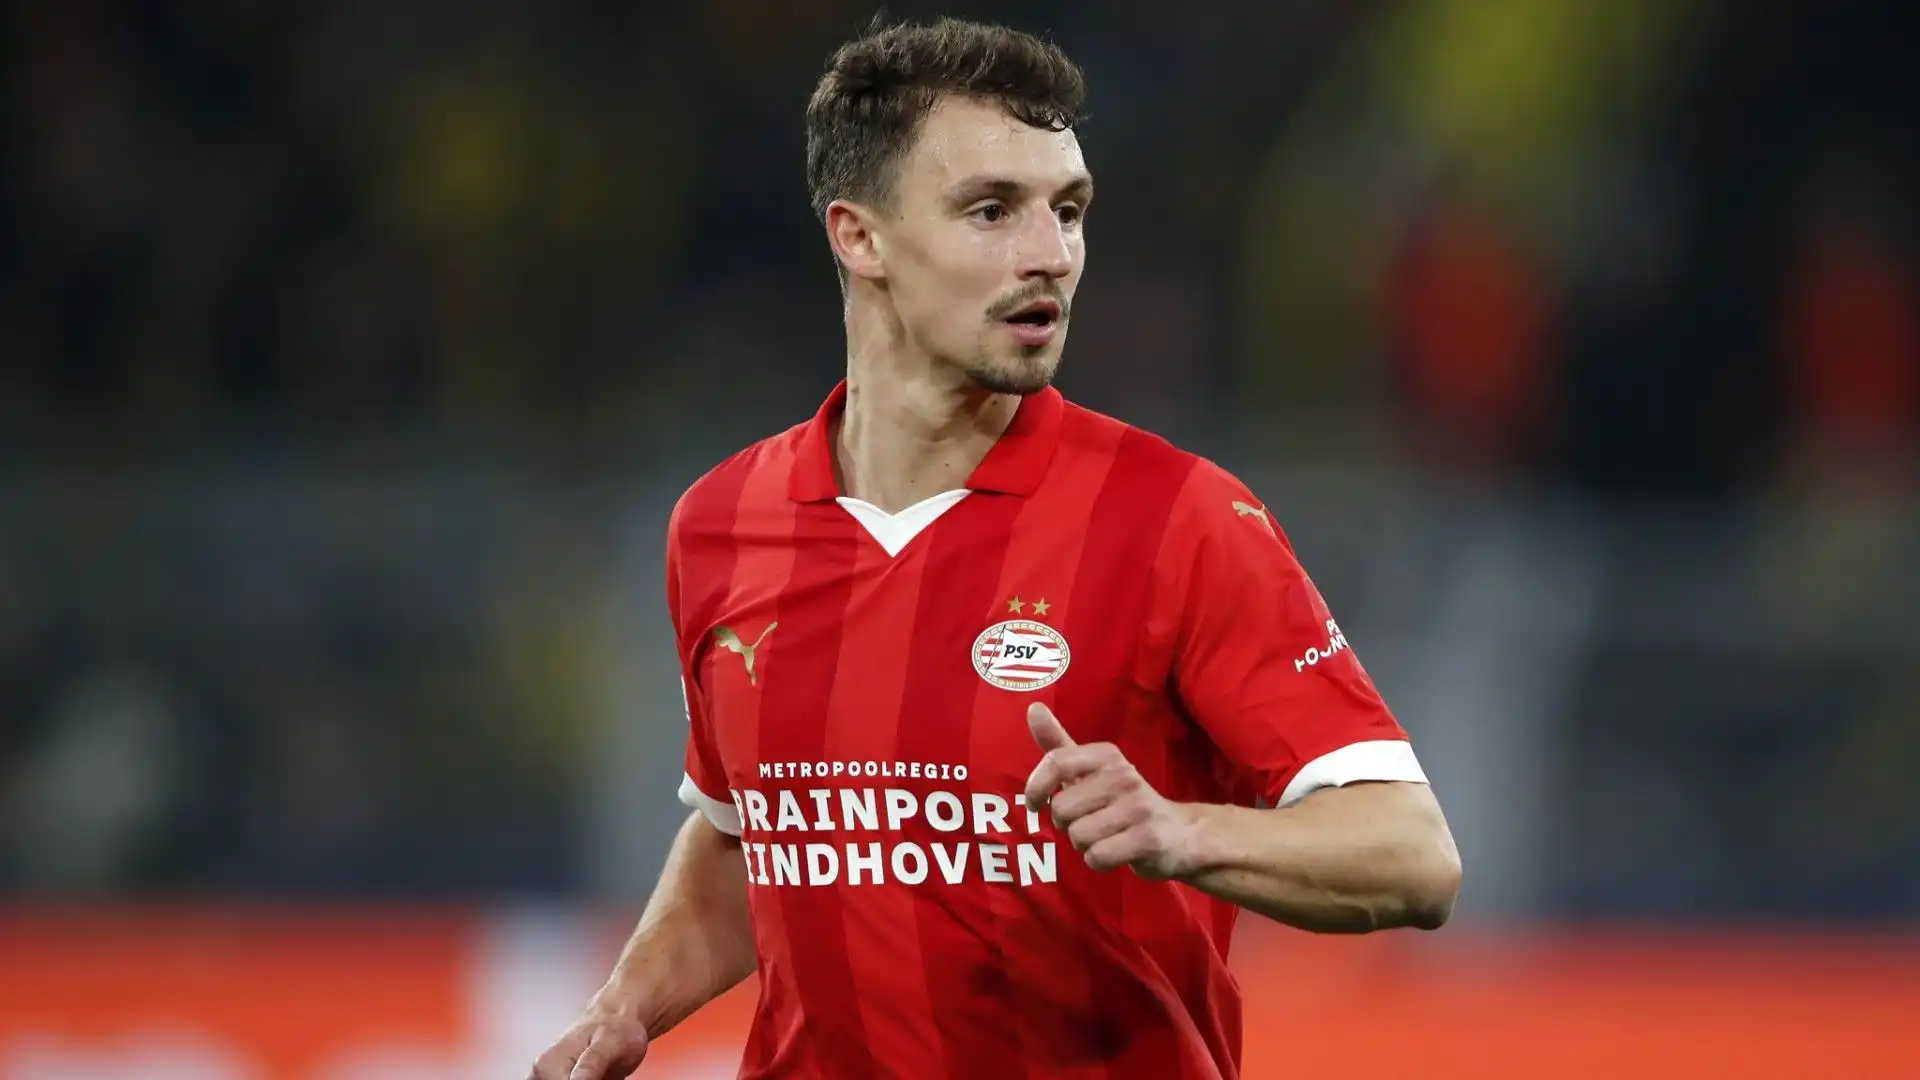 Il calciatore ha un contratto con il PSV fino al 2025 e non ha ancora firmato il rinnovo